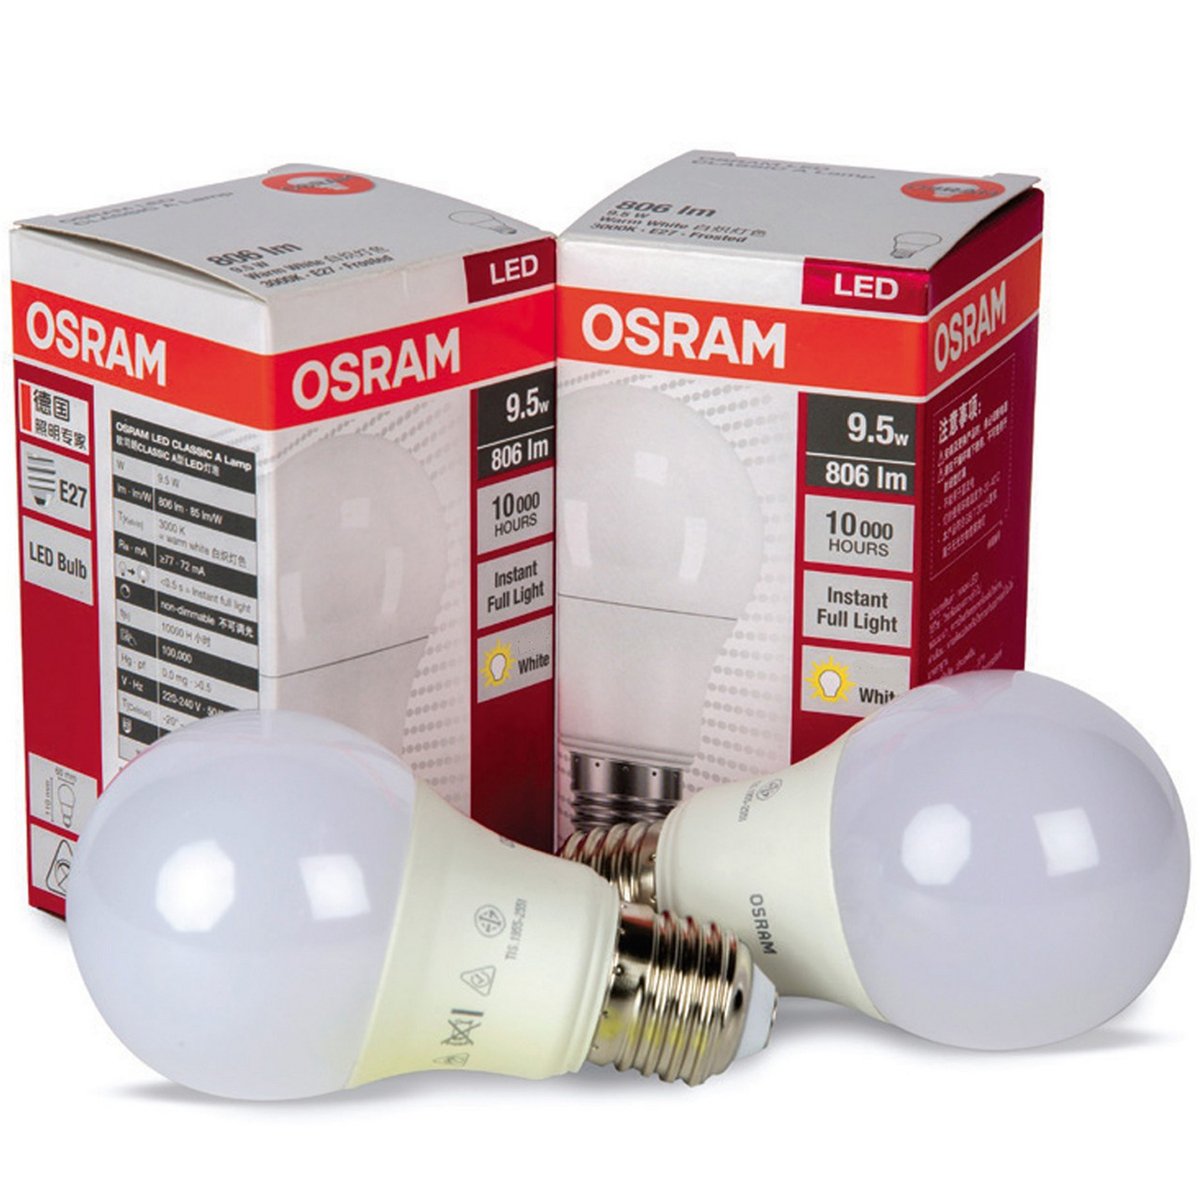 Osram LED Bulb 9.5W A60 CW Frs 2pcs at Best Price | LED Bulb | Lulu UAE